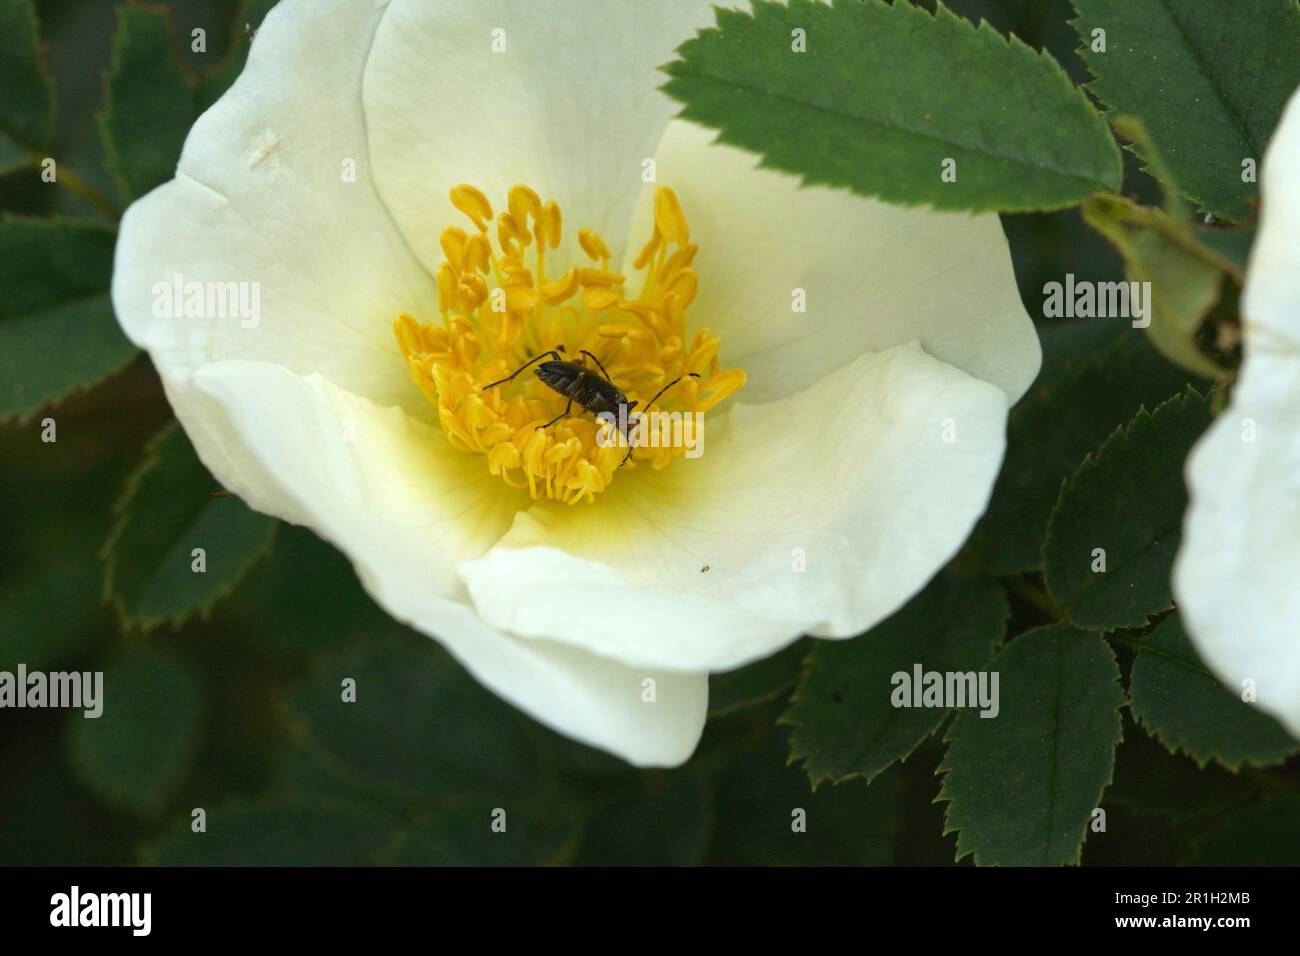 Hagebuttenblüte mit kleinem Käfer Stock Photo